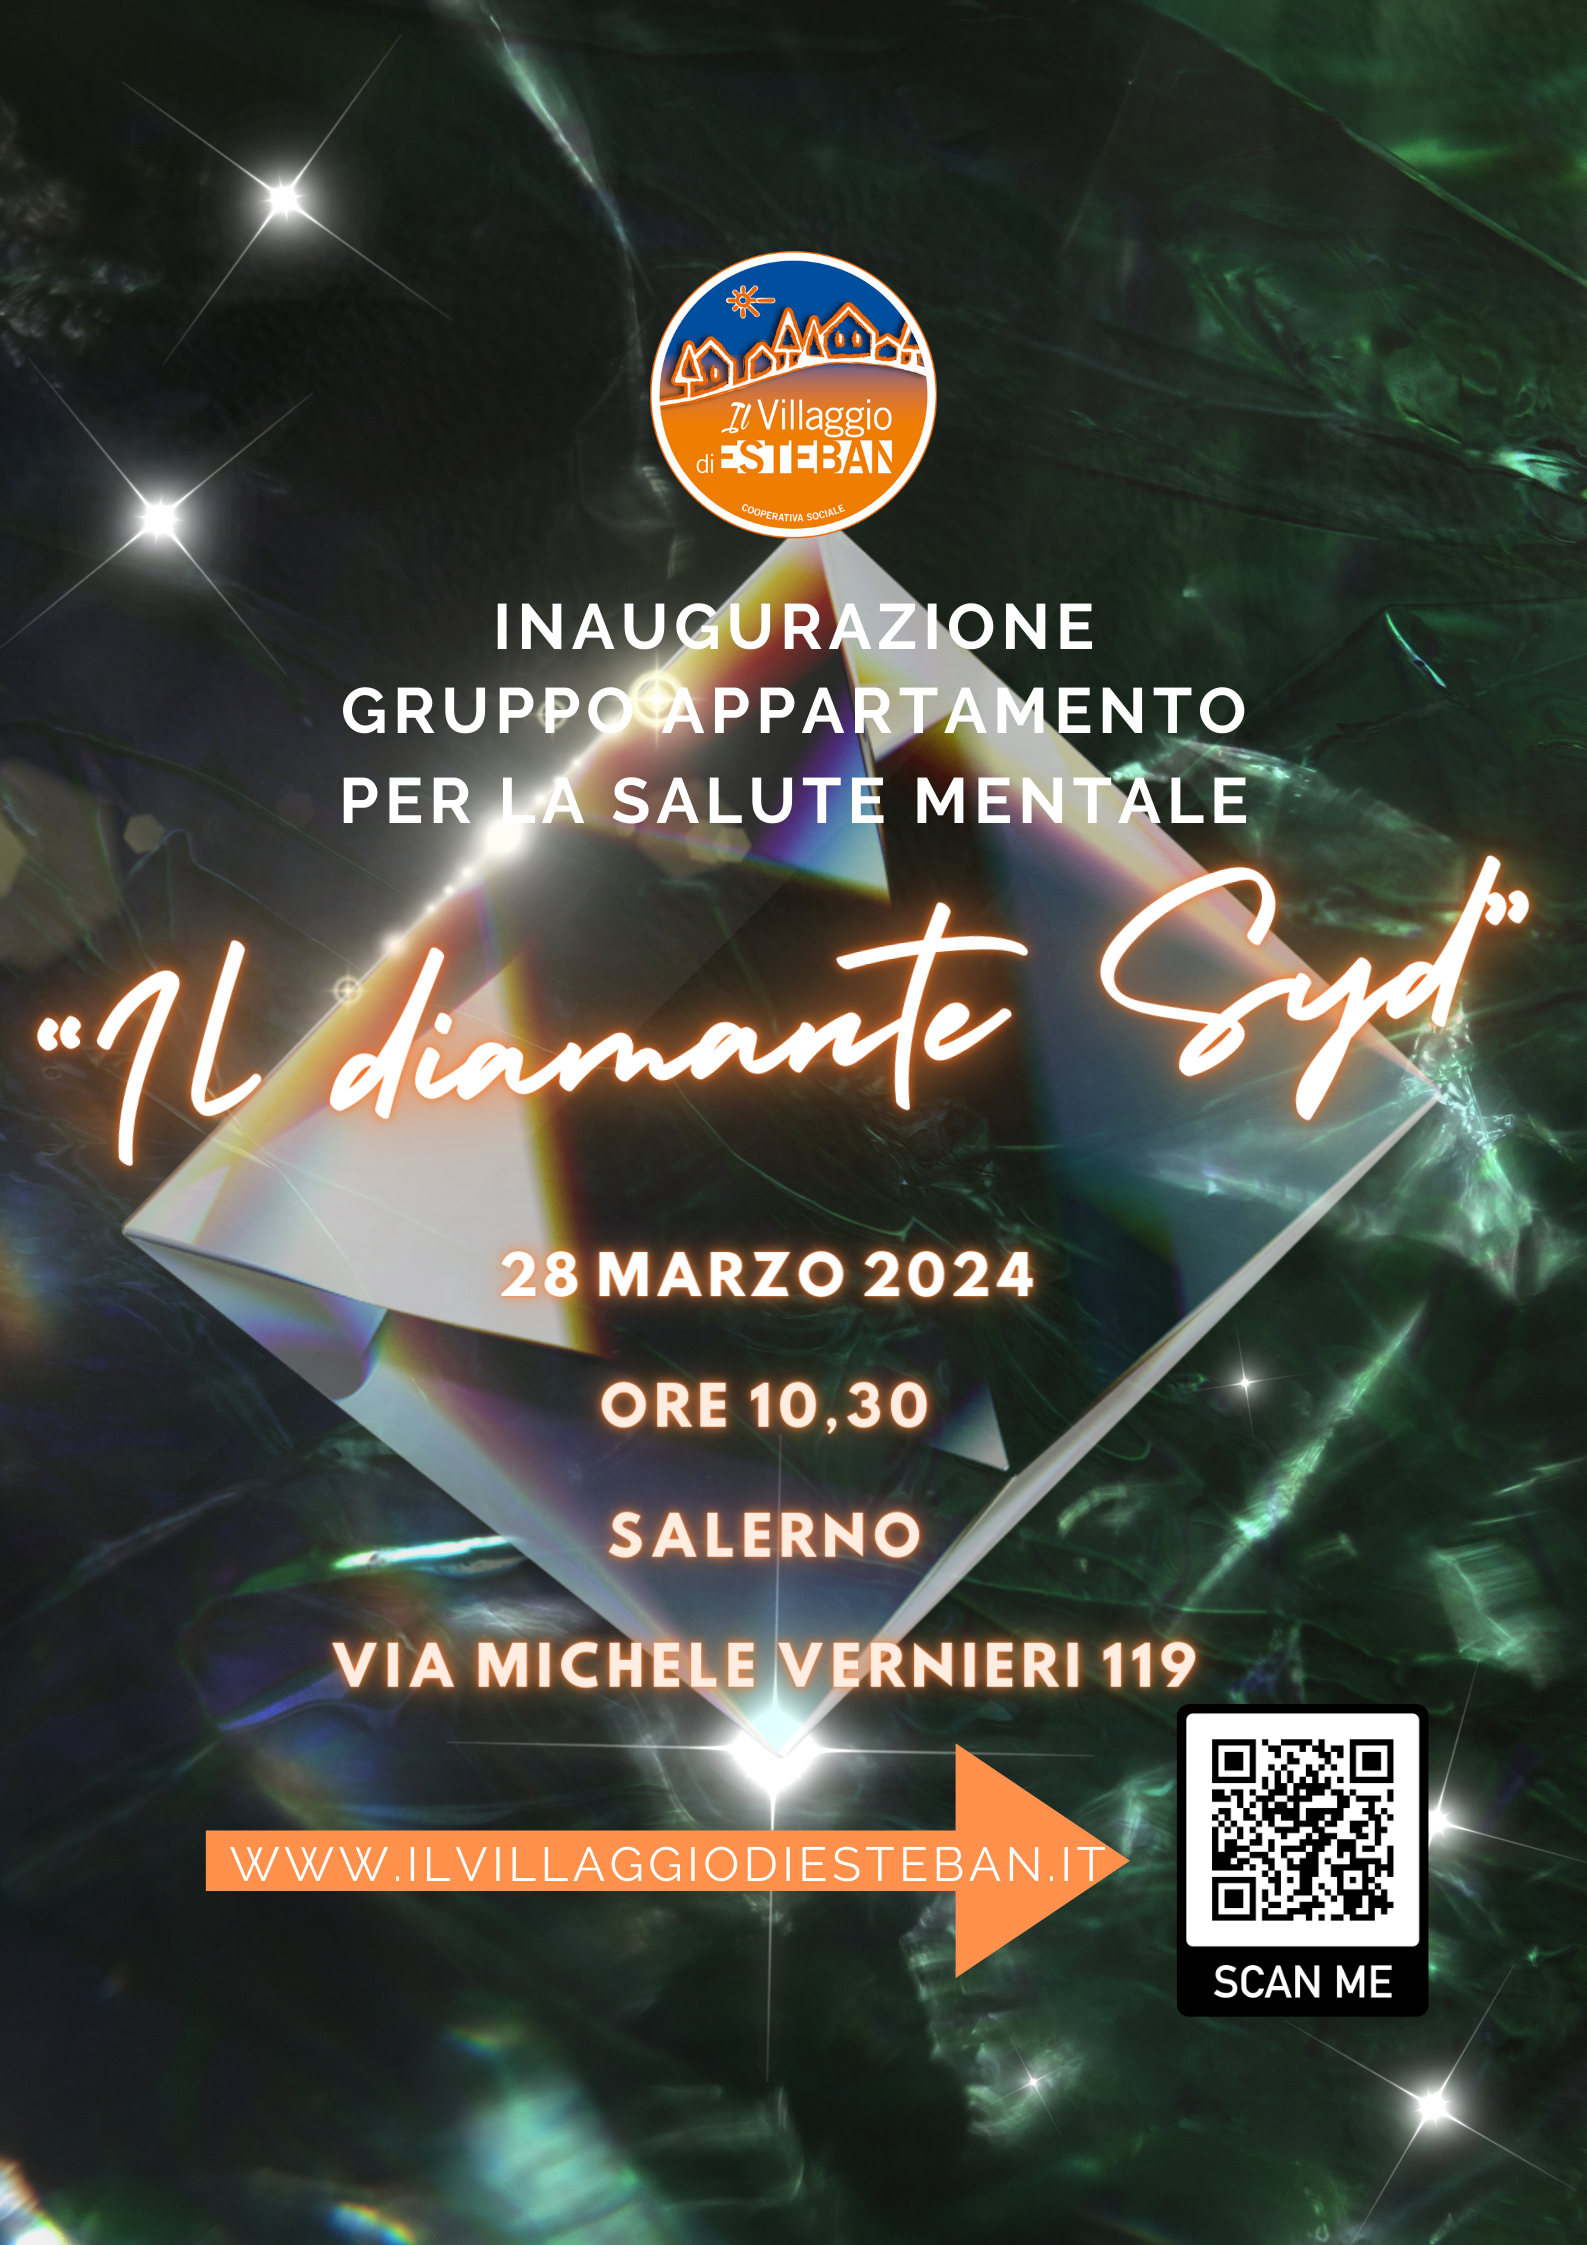 Salerno: “Il diamante Syd”, gruppo appartamento per salute mentale